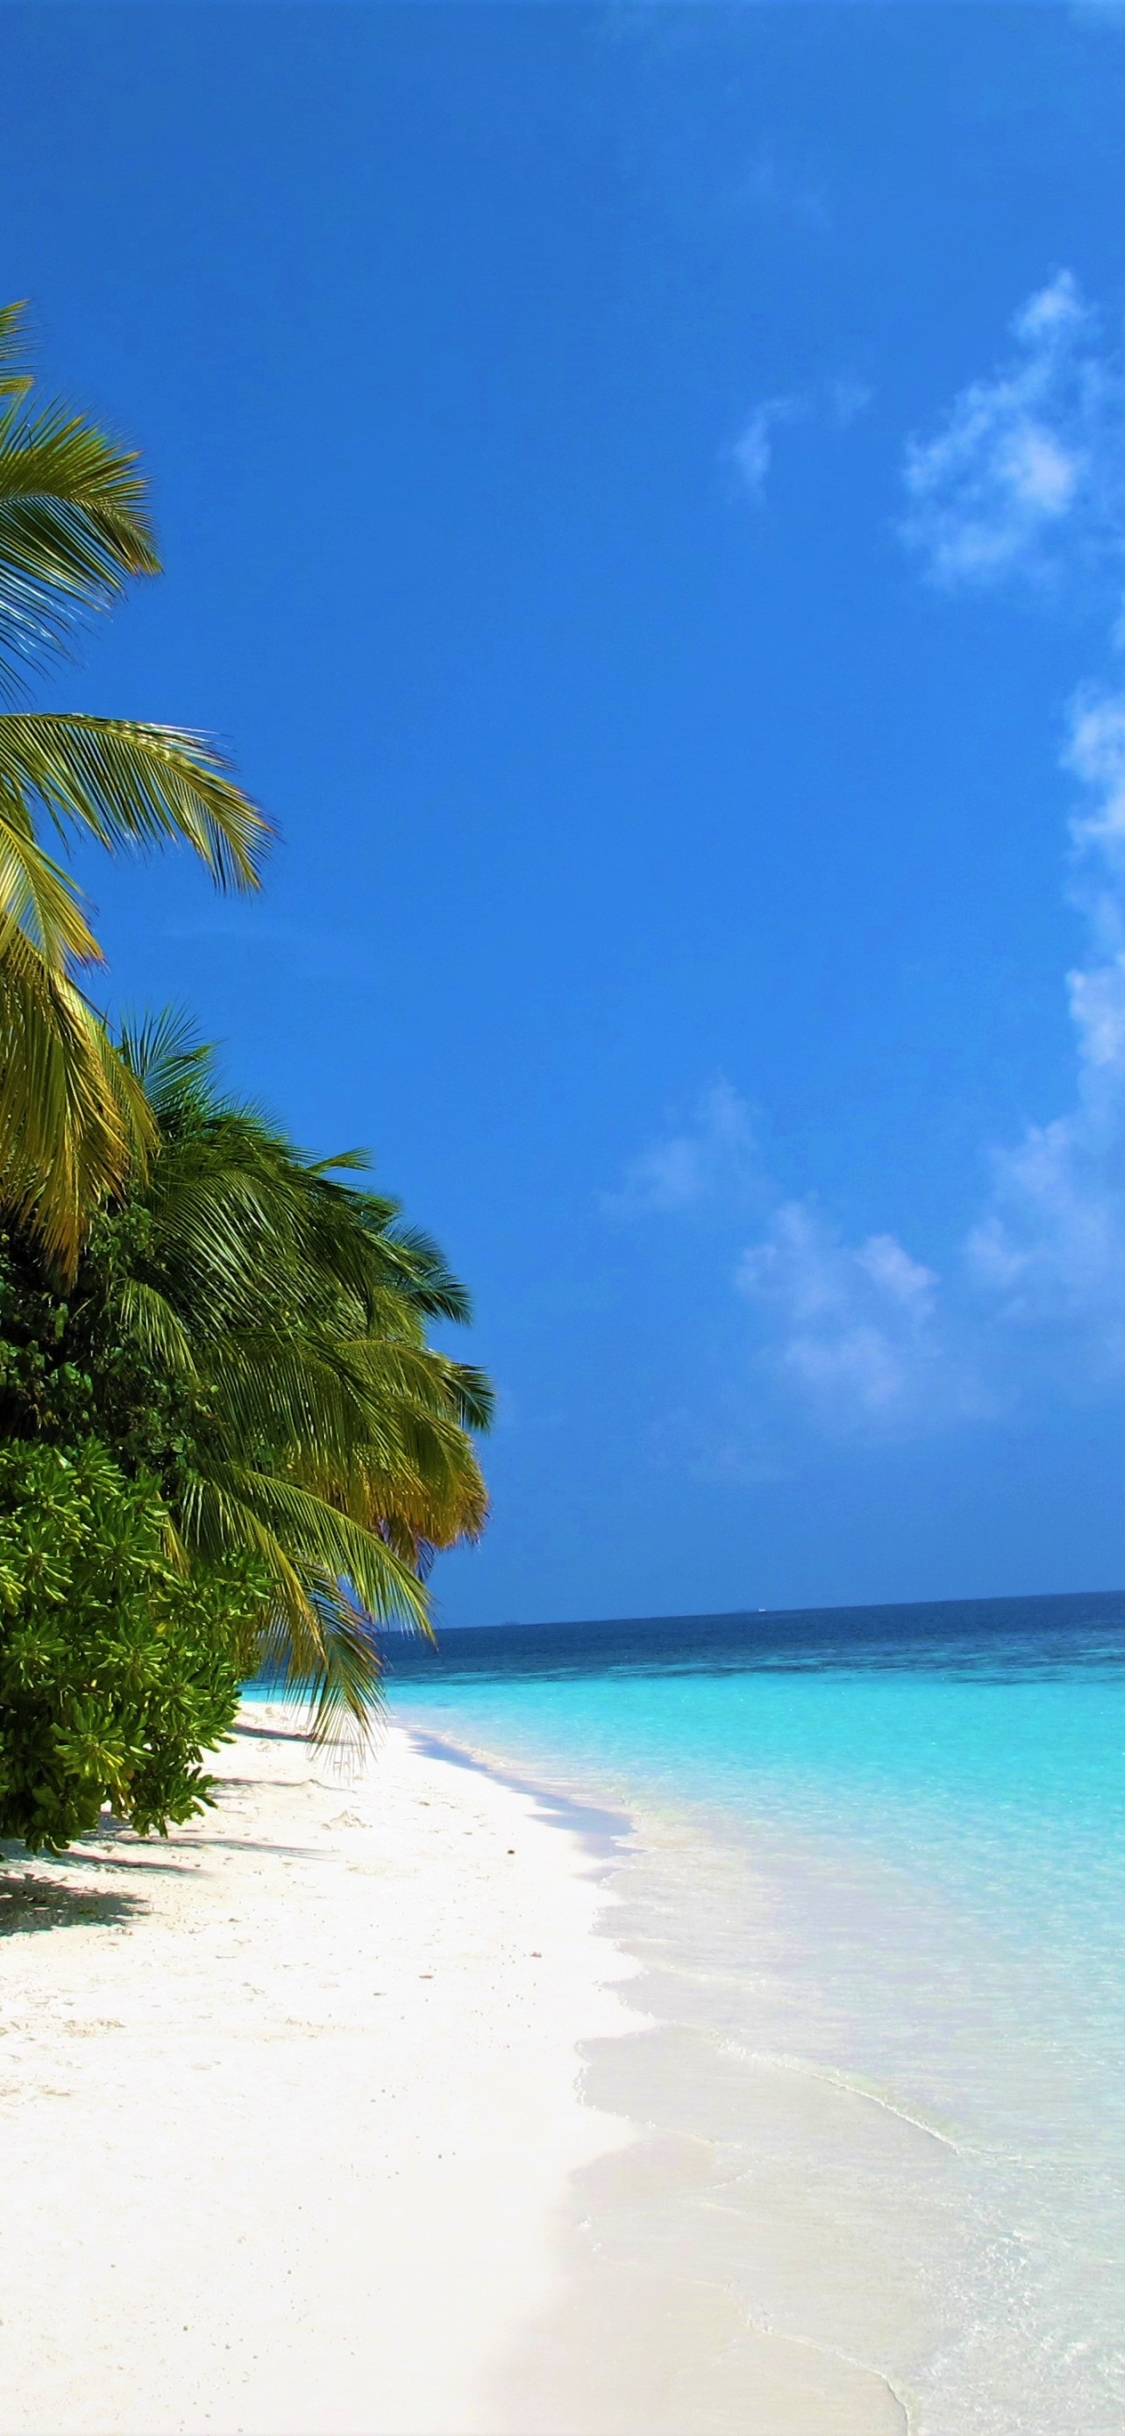 Скачать картинку Море, Пляж, Пальмы, Океан, Пальма, Земля, Тропический, Мальдивы, Земля/природа в телефон бесплатно.